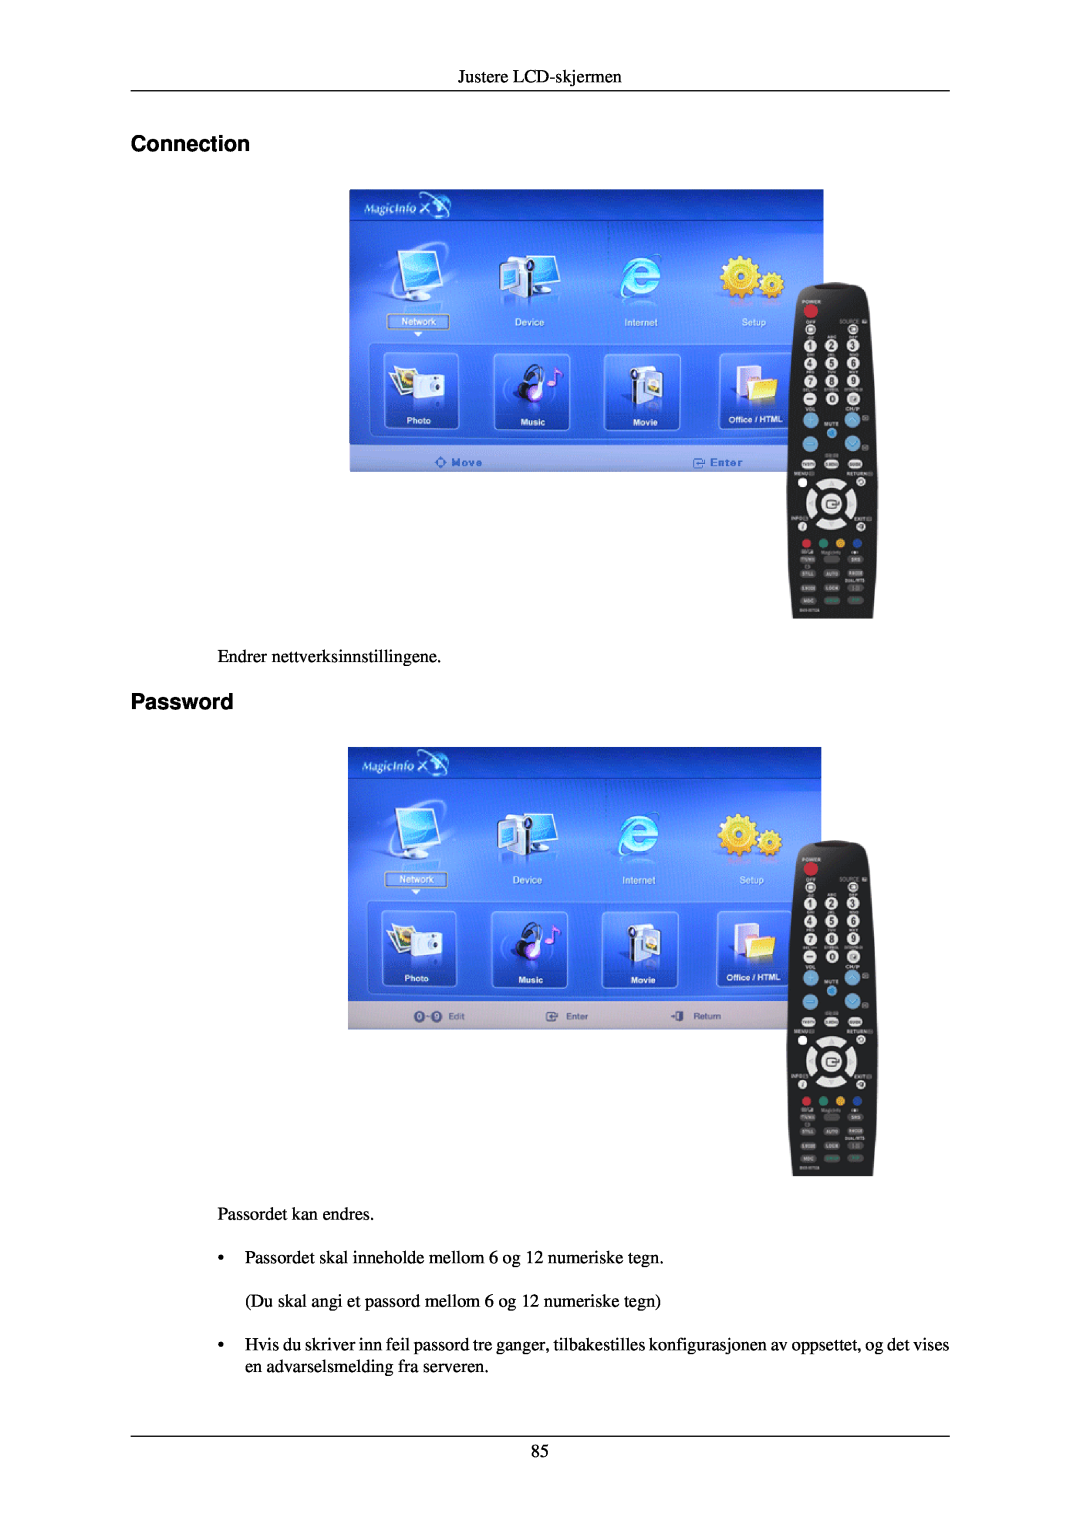 Samsung LH40TCUMBG/EN Connection, Password, Justere LCD-skjermen, Endrer nettverksinnstillingene, Passordet kan endres 